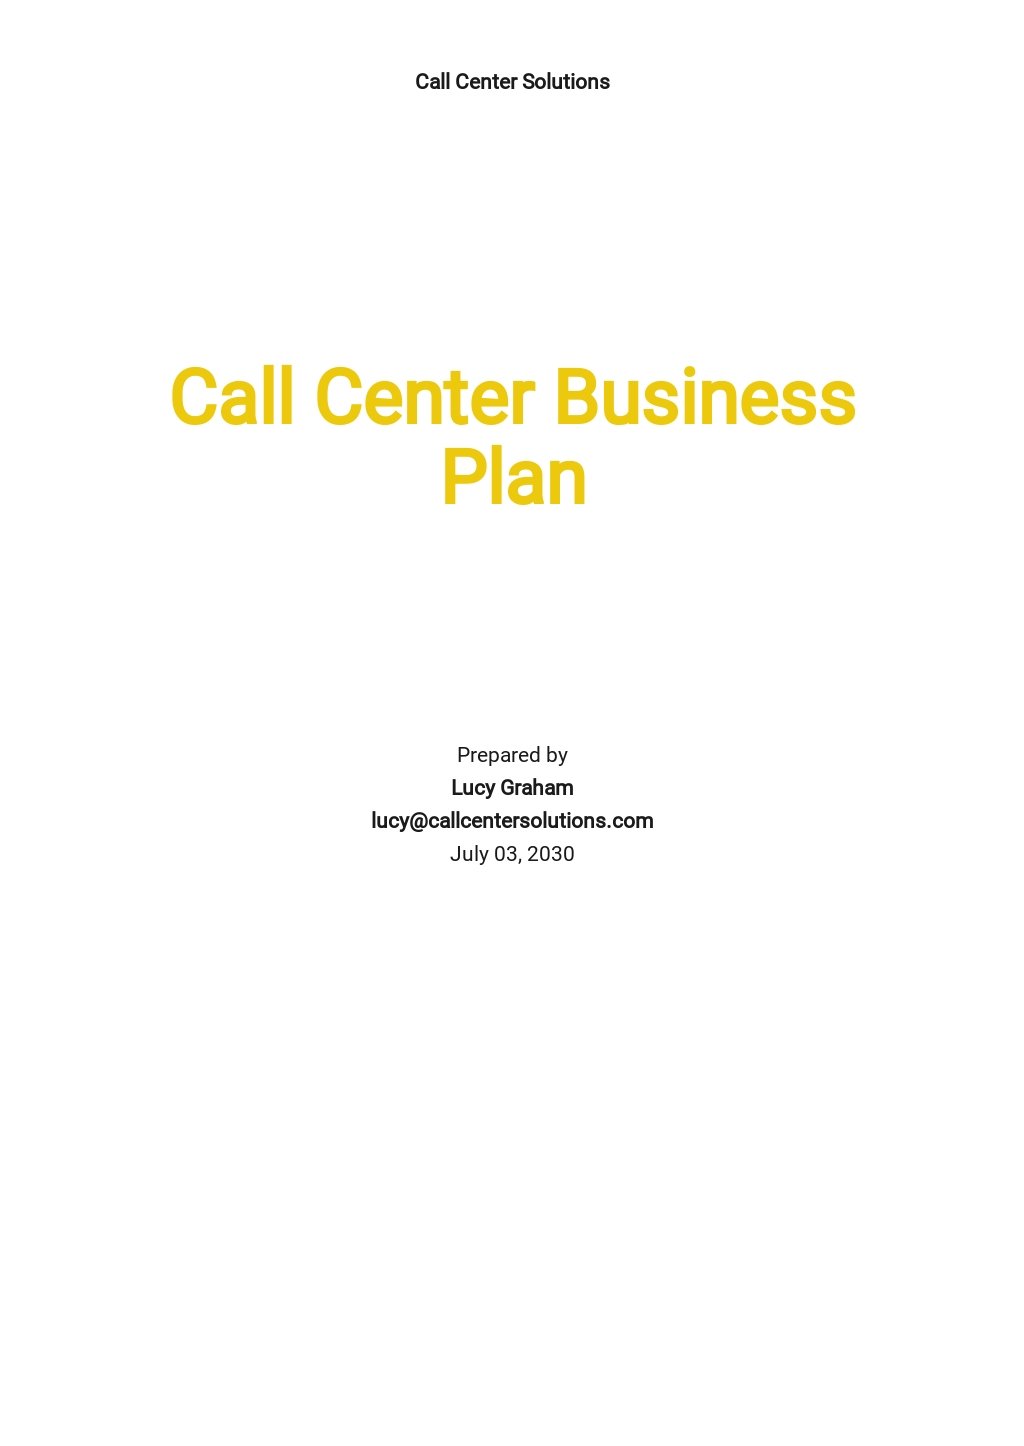 a call center business plan